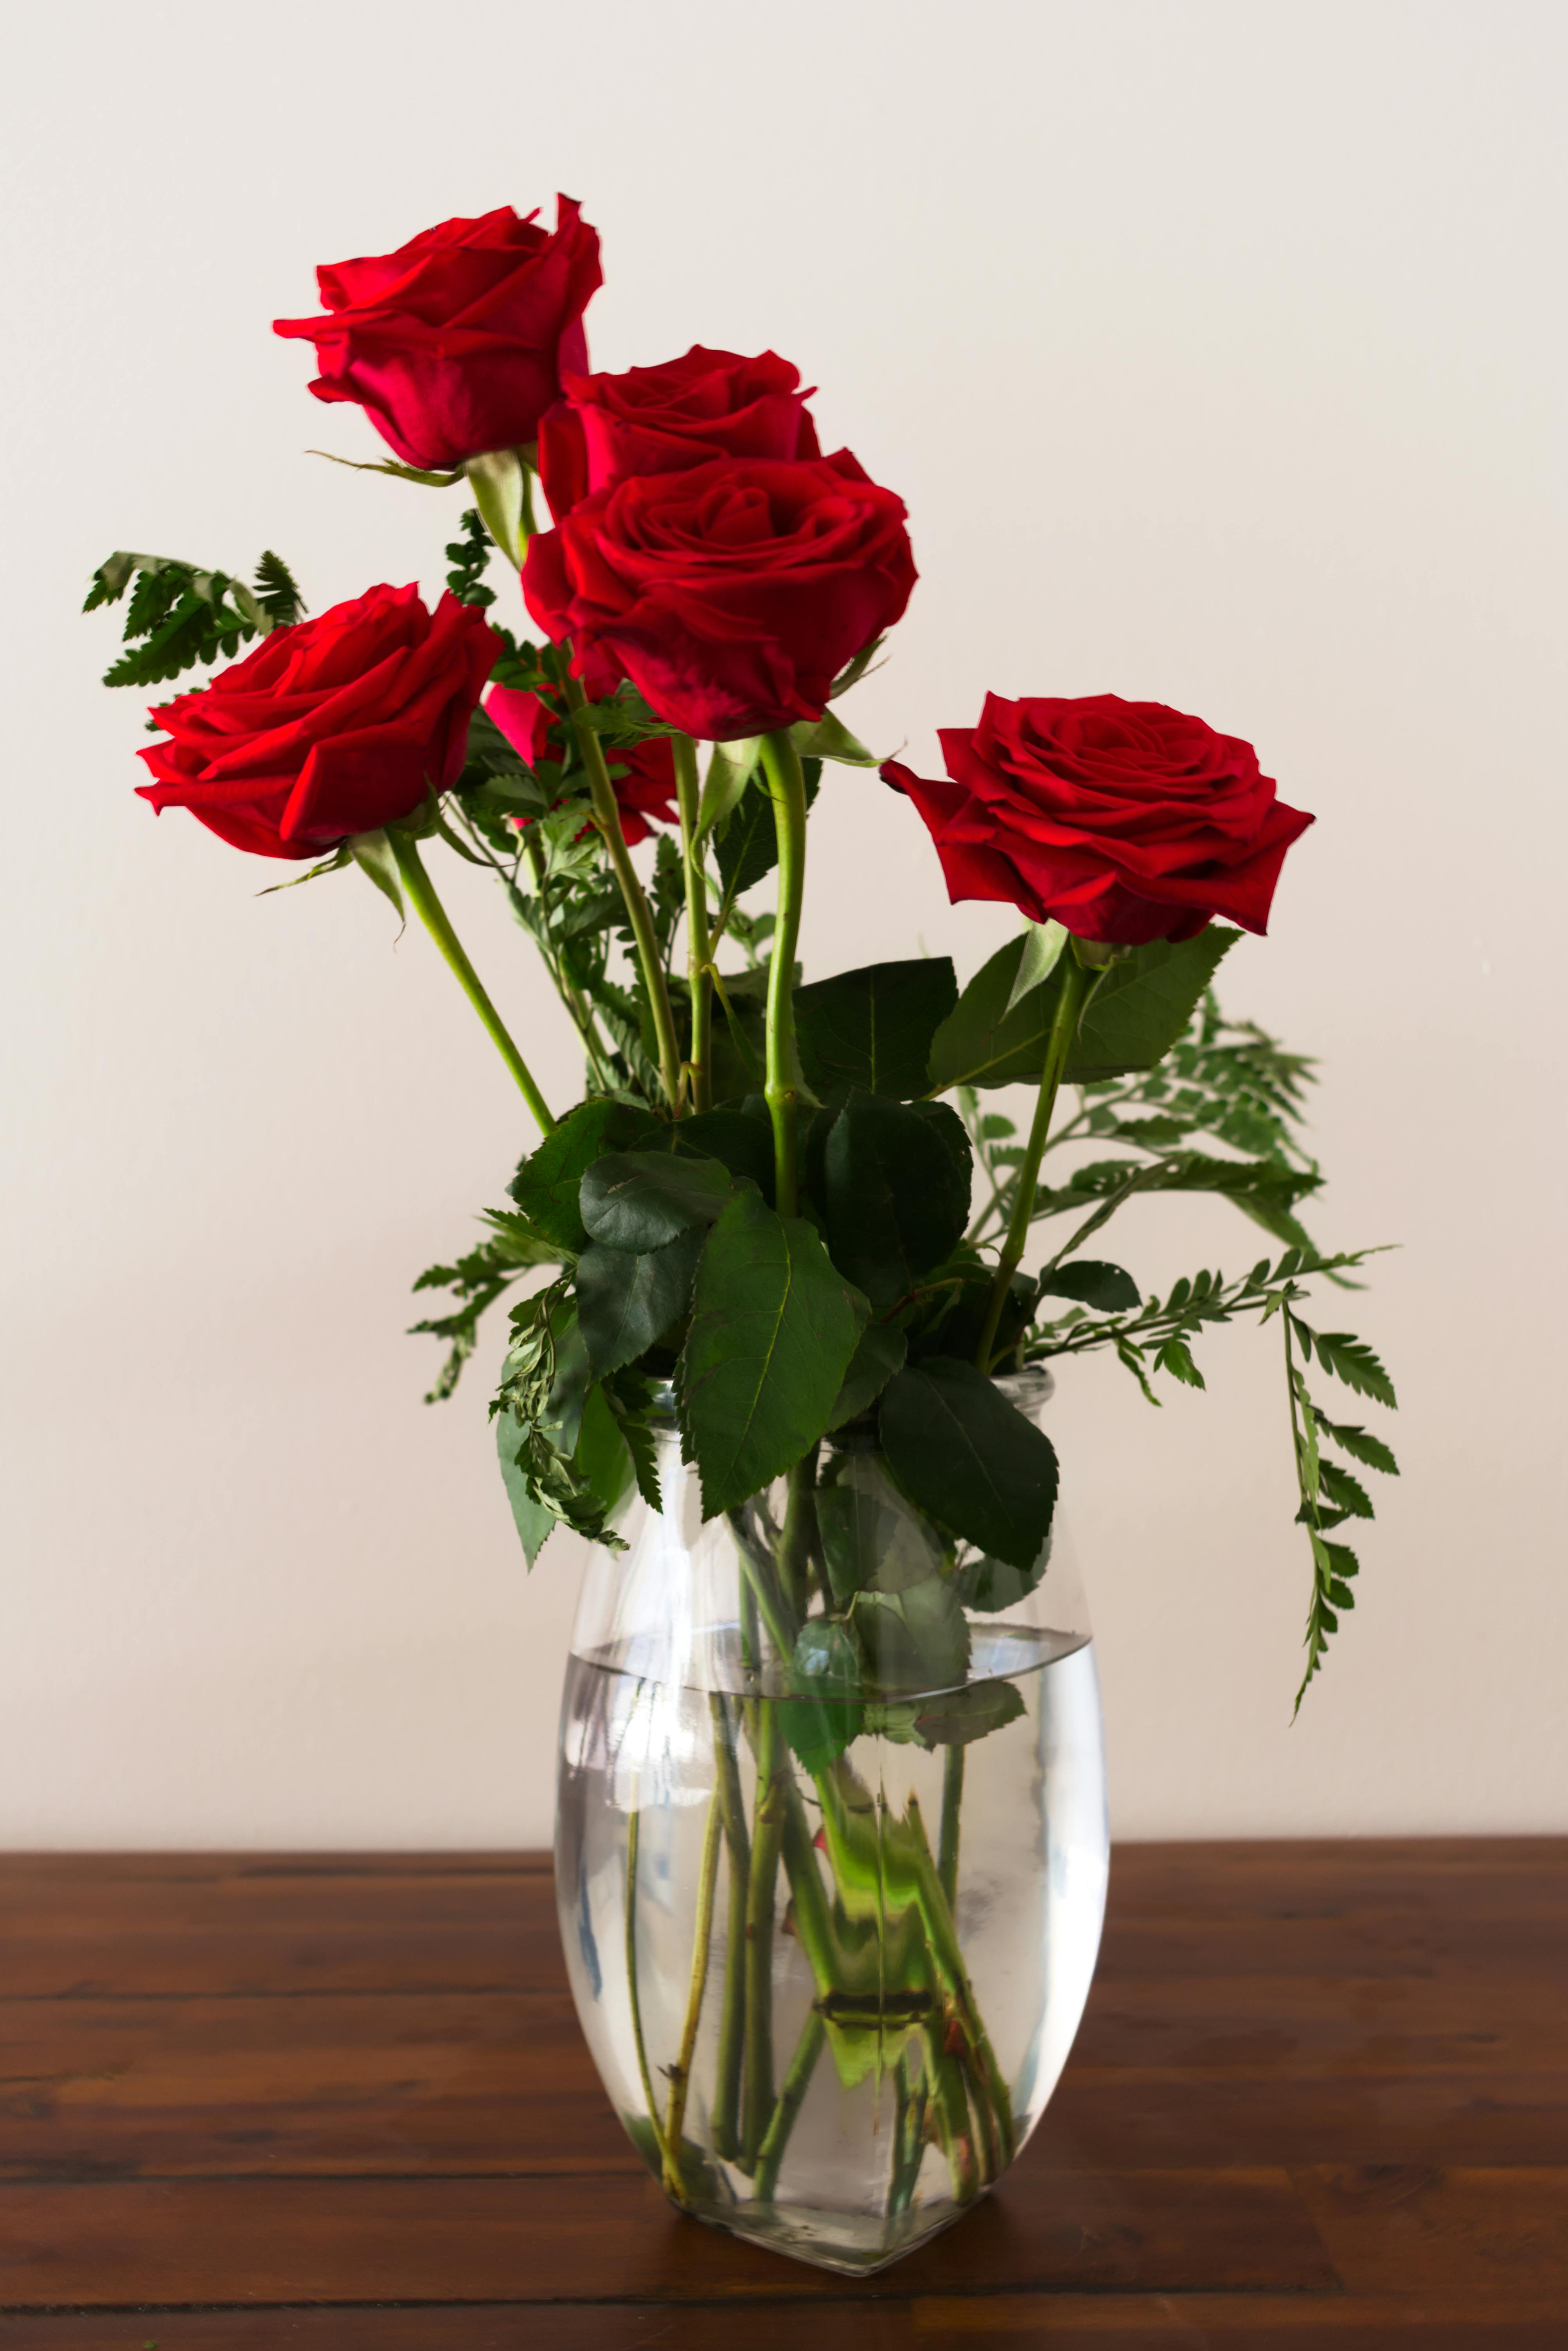  Photo  of Roses On Flower Vase   Free Stock Photo 